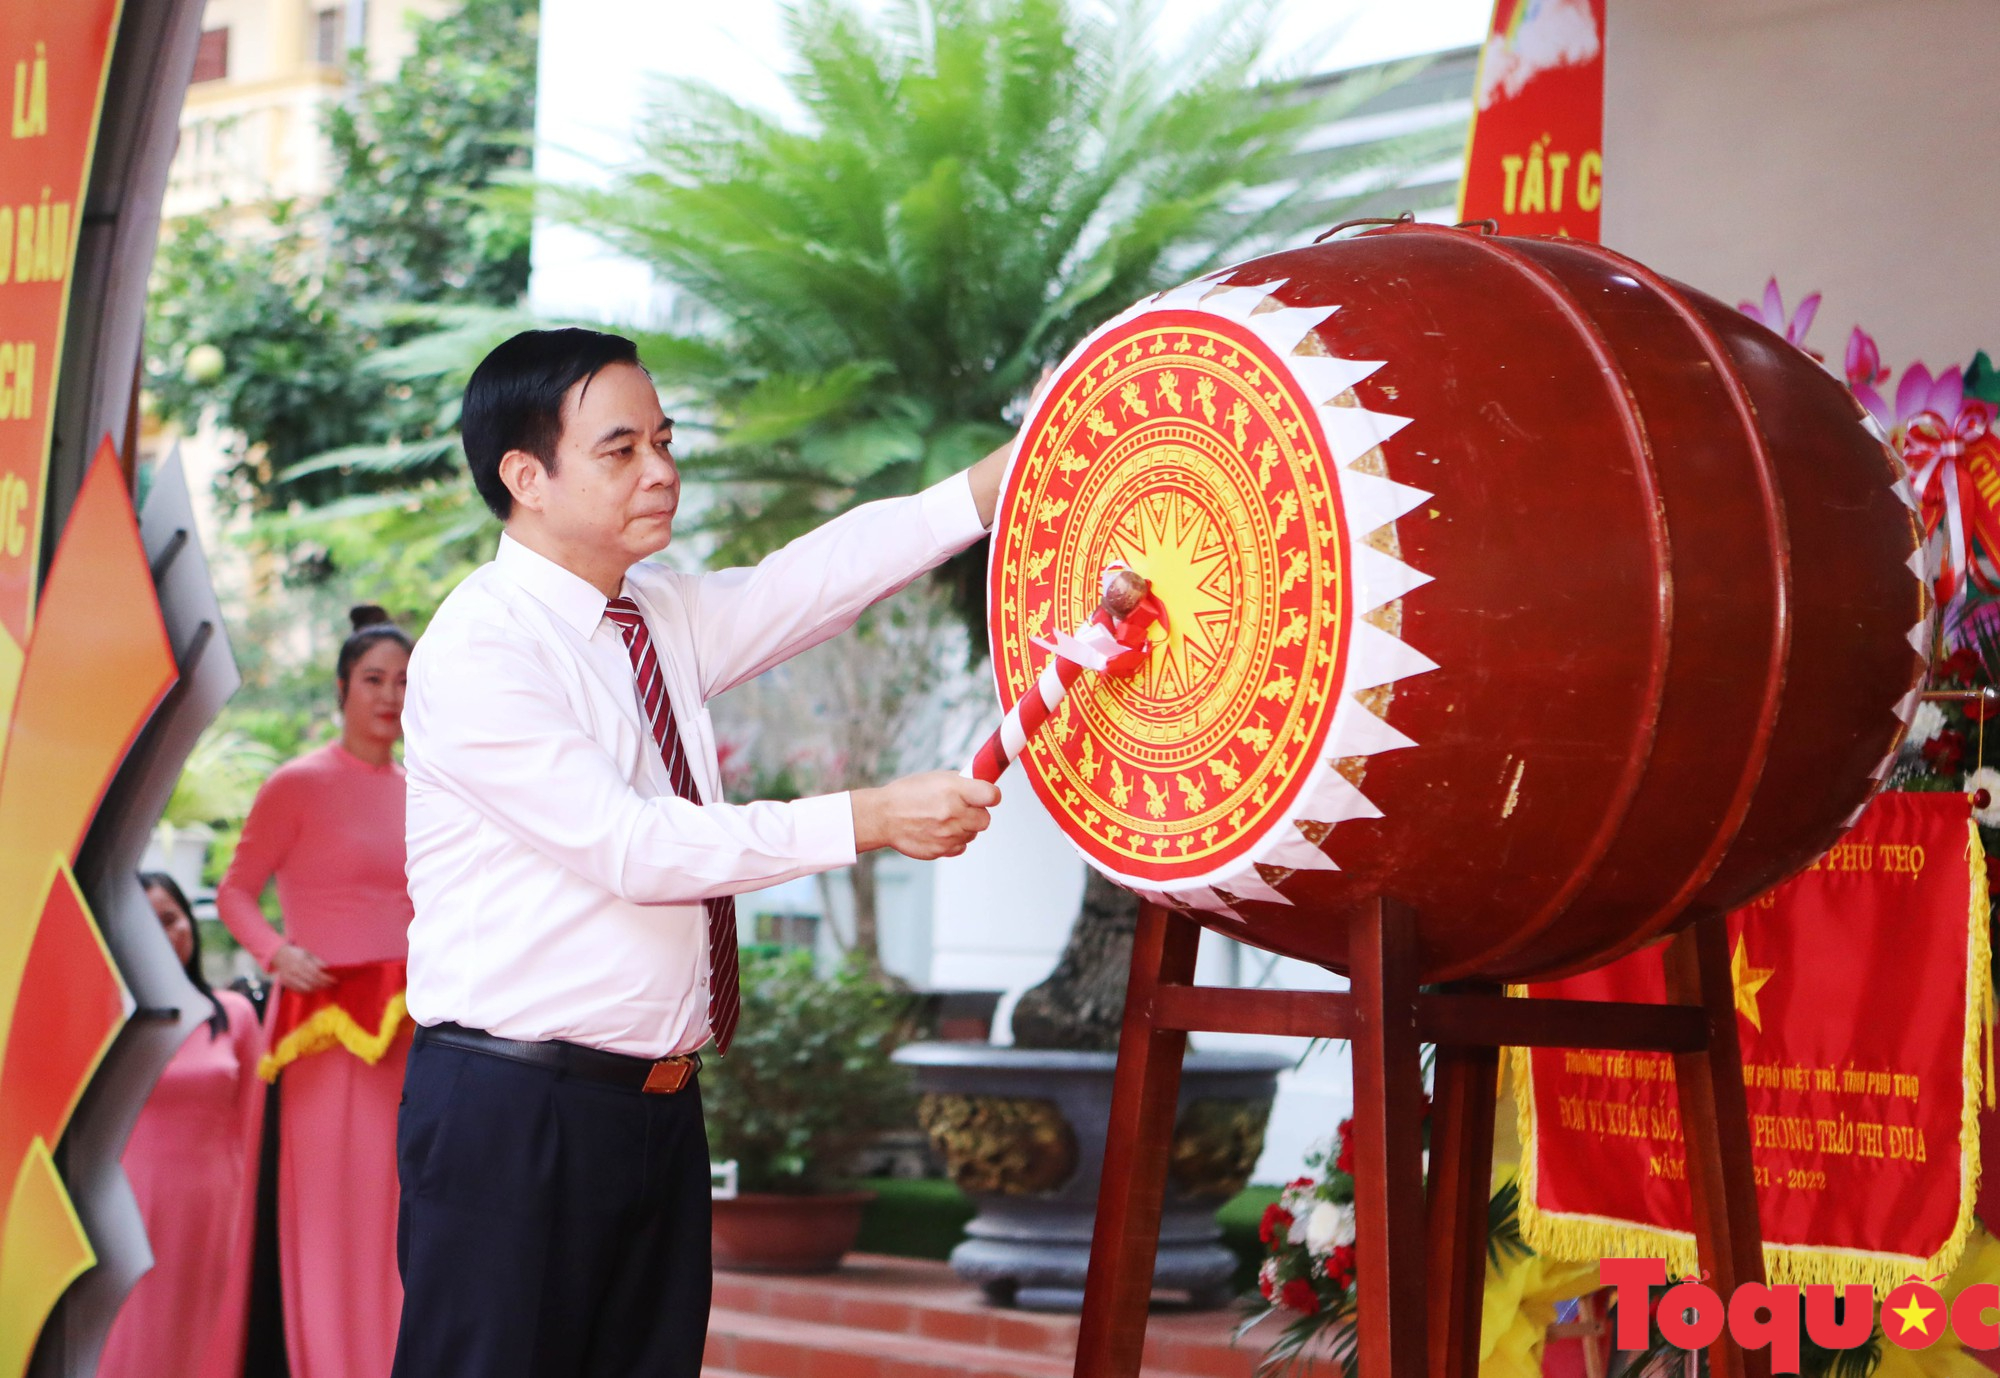 Trường tiểu học Tân Dân khai giảng năm học mới, đón nhận Cờ thi đua của UBND tỉnh Phú Thọ - Ảnh 8.